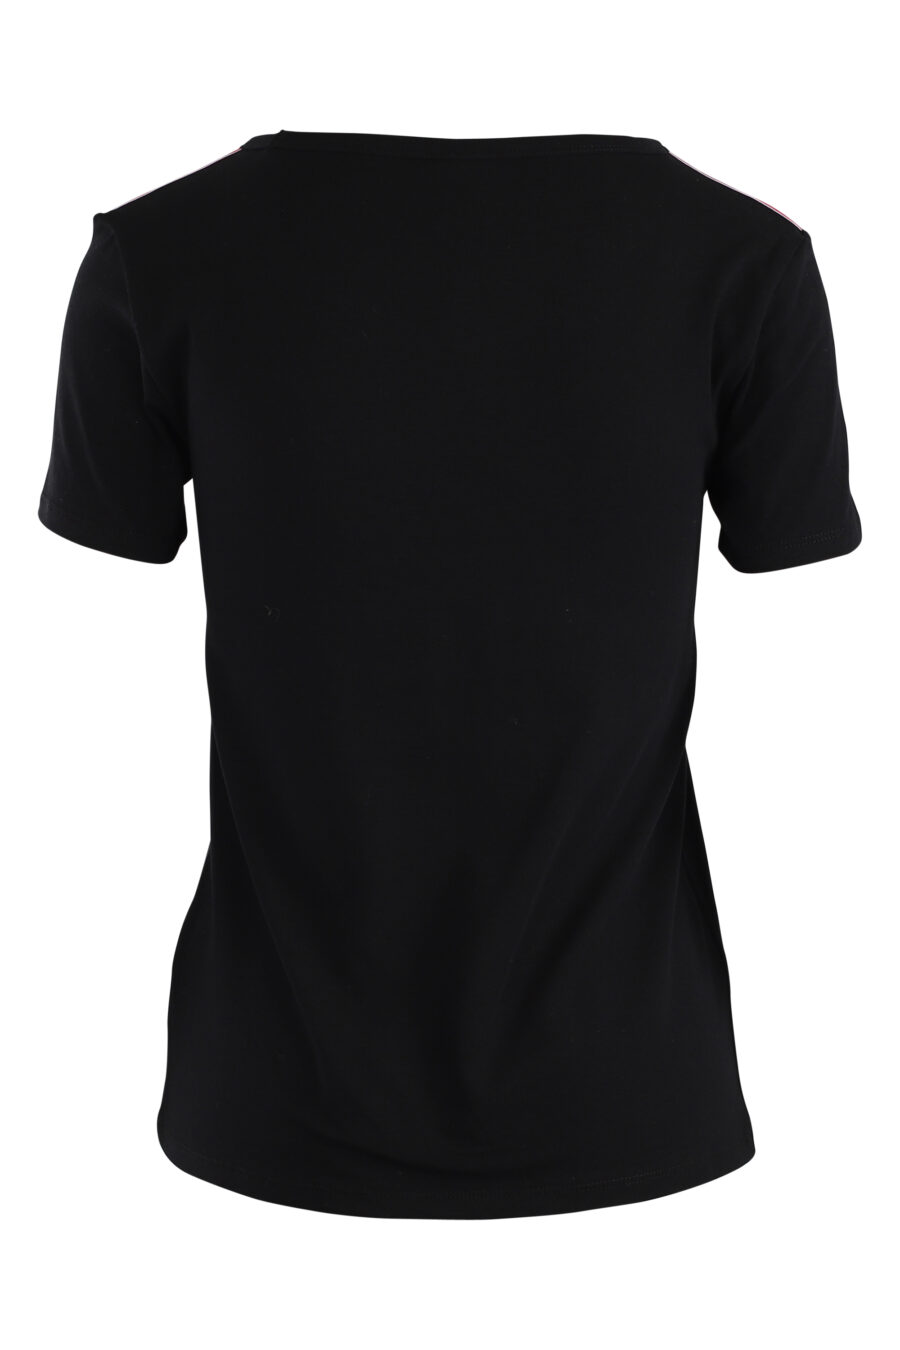 T-shirt preta com logótipo de fita nas mangas - IMG 5517